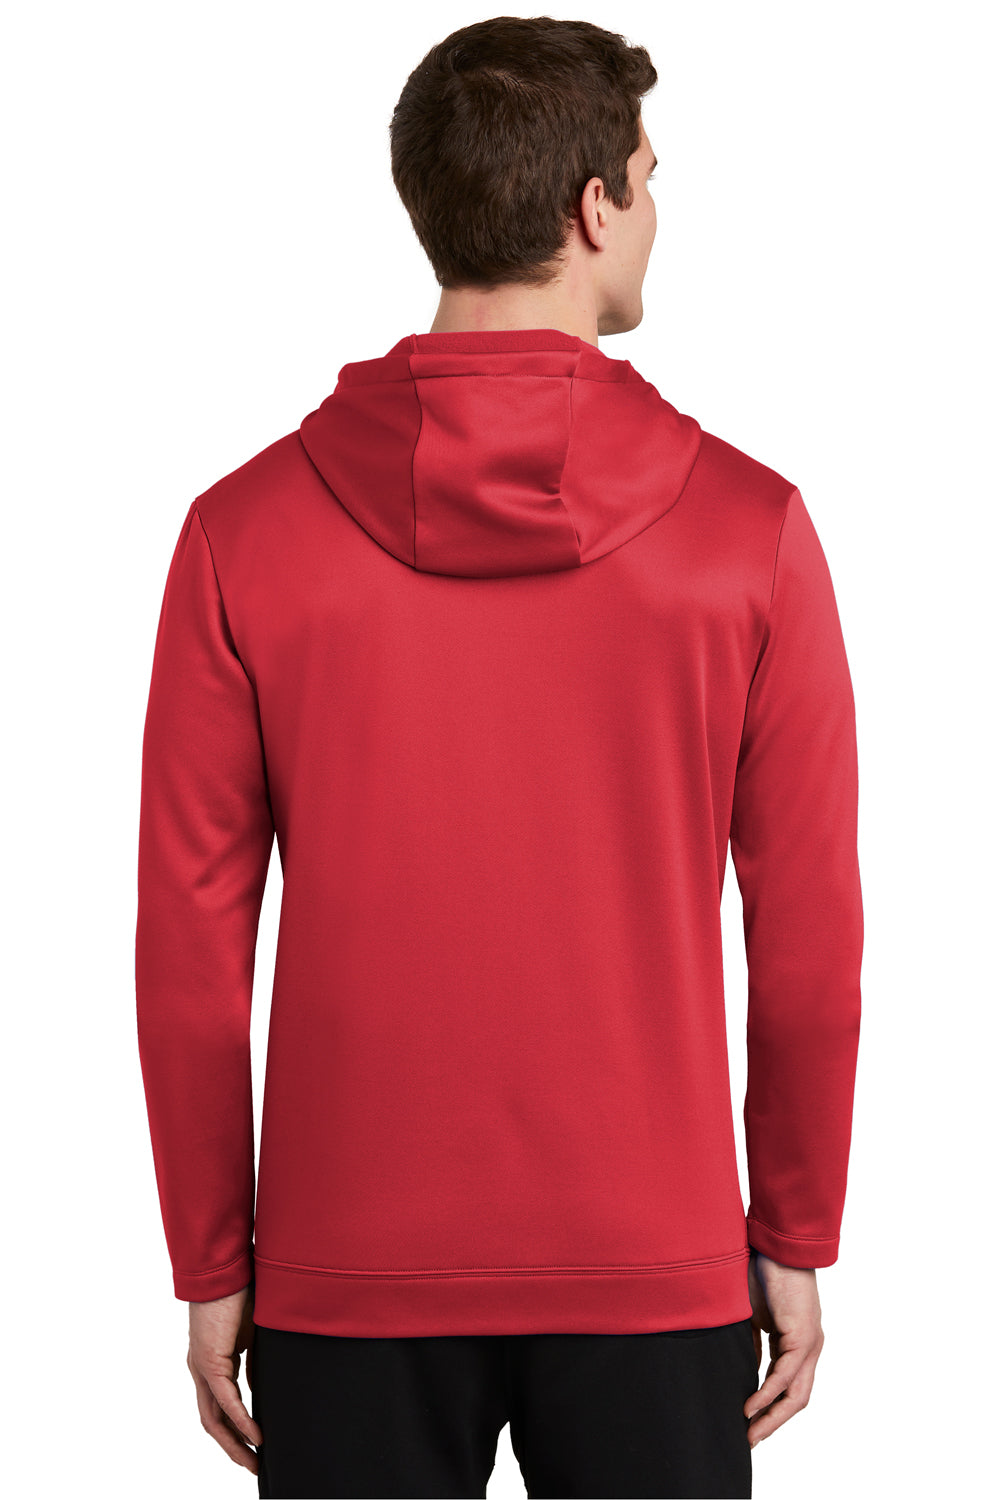 Nike NKAH6259 Mens Therma-Fit Fleece Full Zip Hooded Sweatshirt Hoodie Red Back